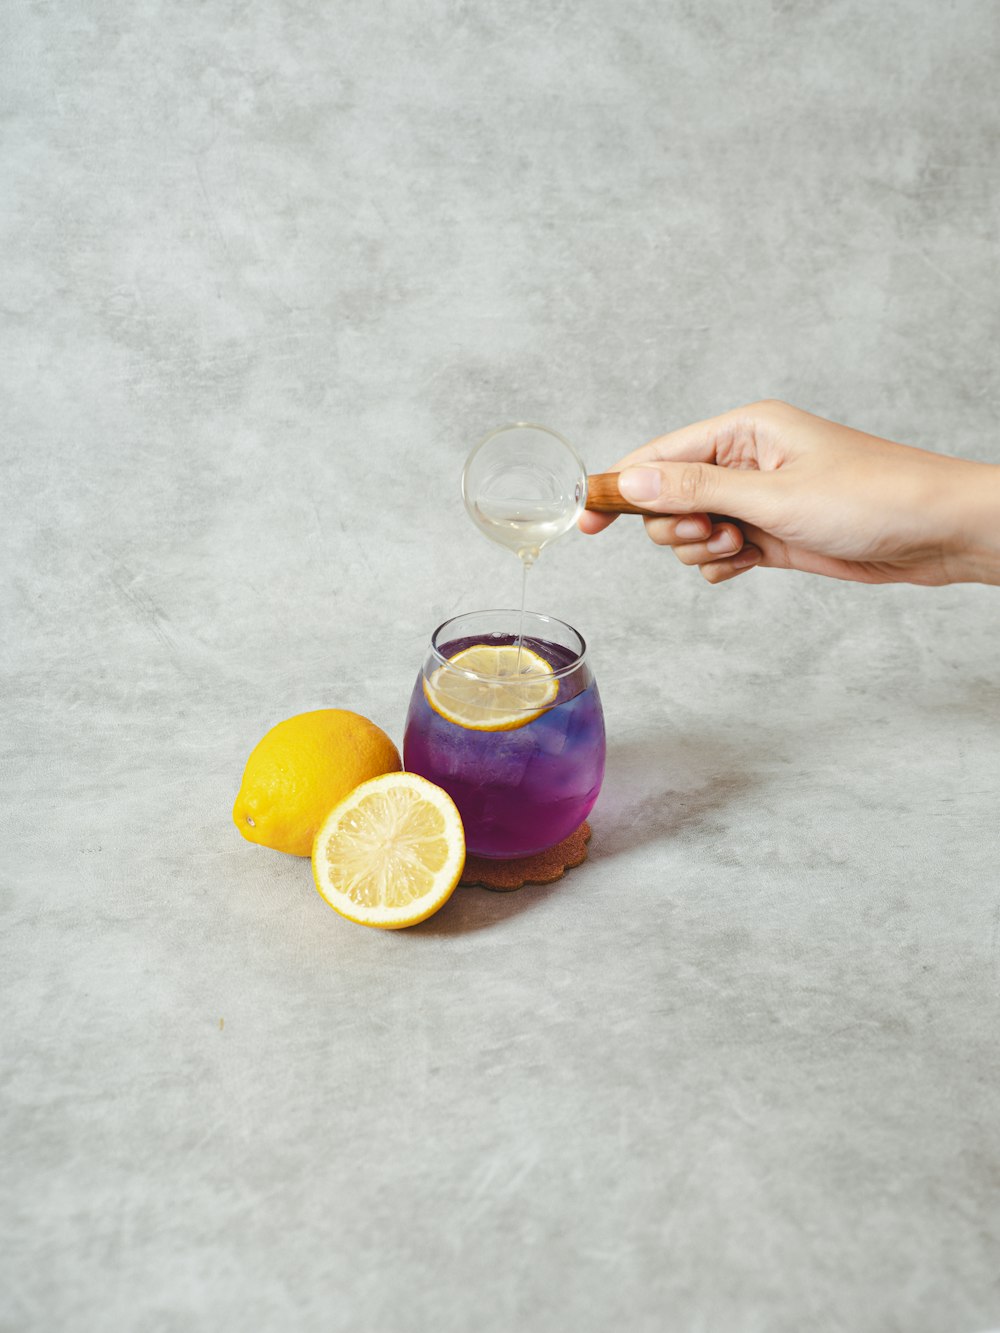 pessoa segurando copo de vidro transparente com suco de laranja